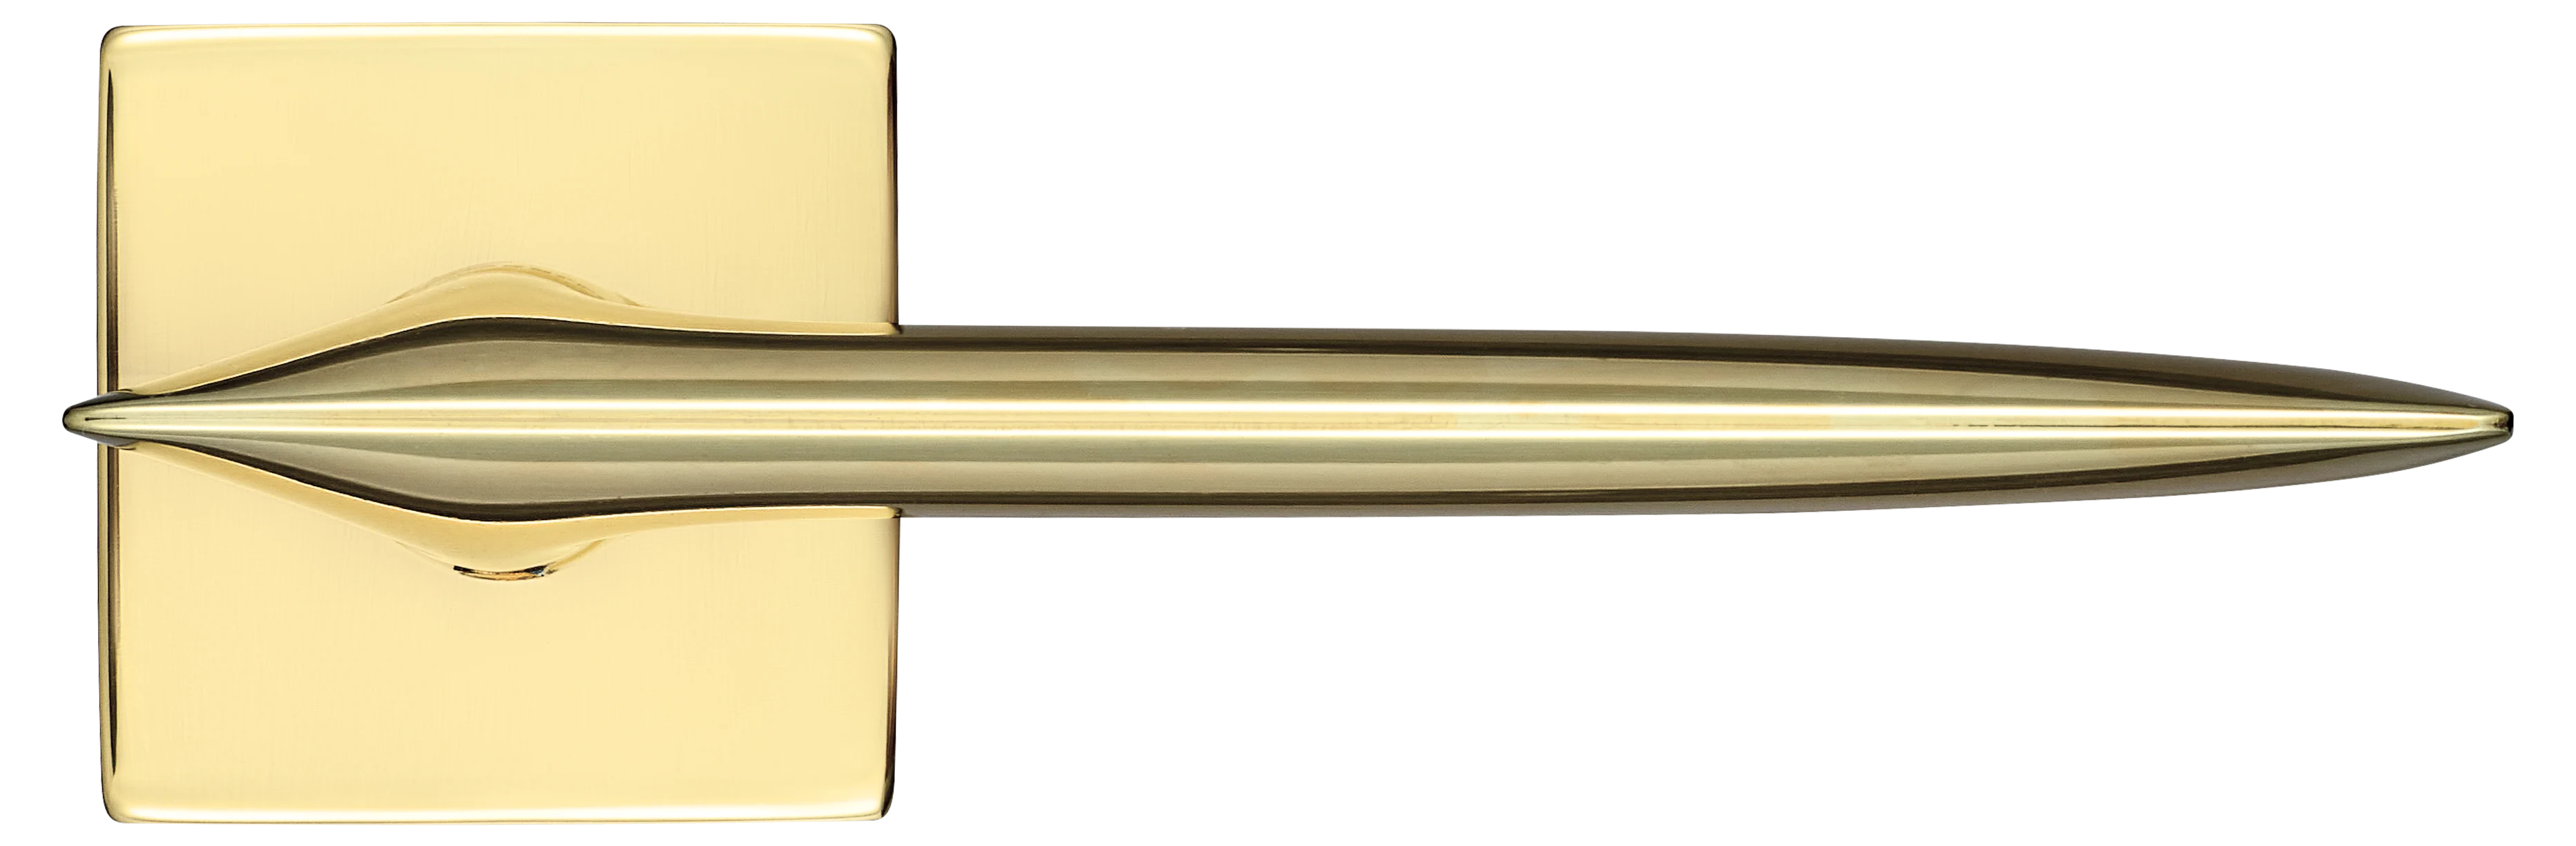 GALACTIC S5 OTL, ручка дверная, цвет -  золото фото купить в Уральске